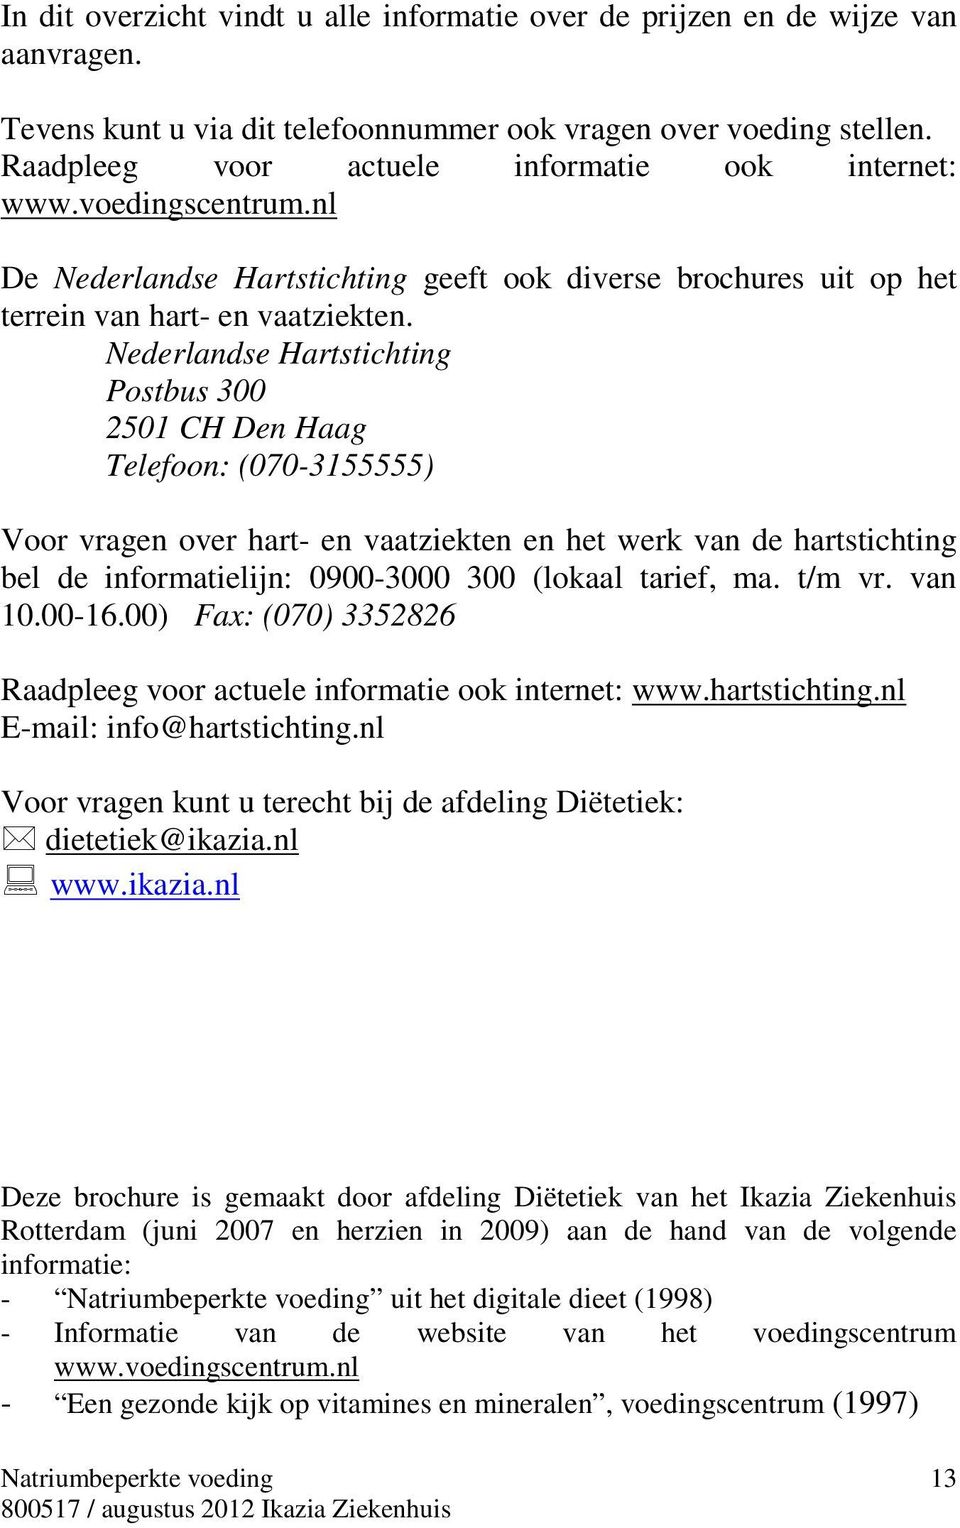 Nederlandse Hartstichting Postbus 300 2501 CH Den Haag Telefoon: (070-3155555) Voor vragen over hart- en vaatziekten en het werk van de hartstichting bel de informatielijn: 0900-3000 300 (lokaal